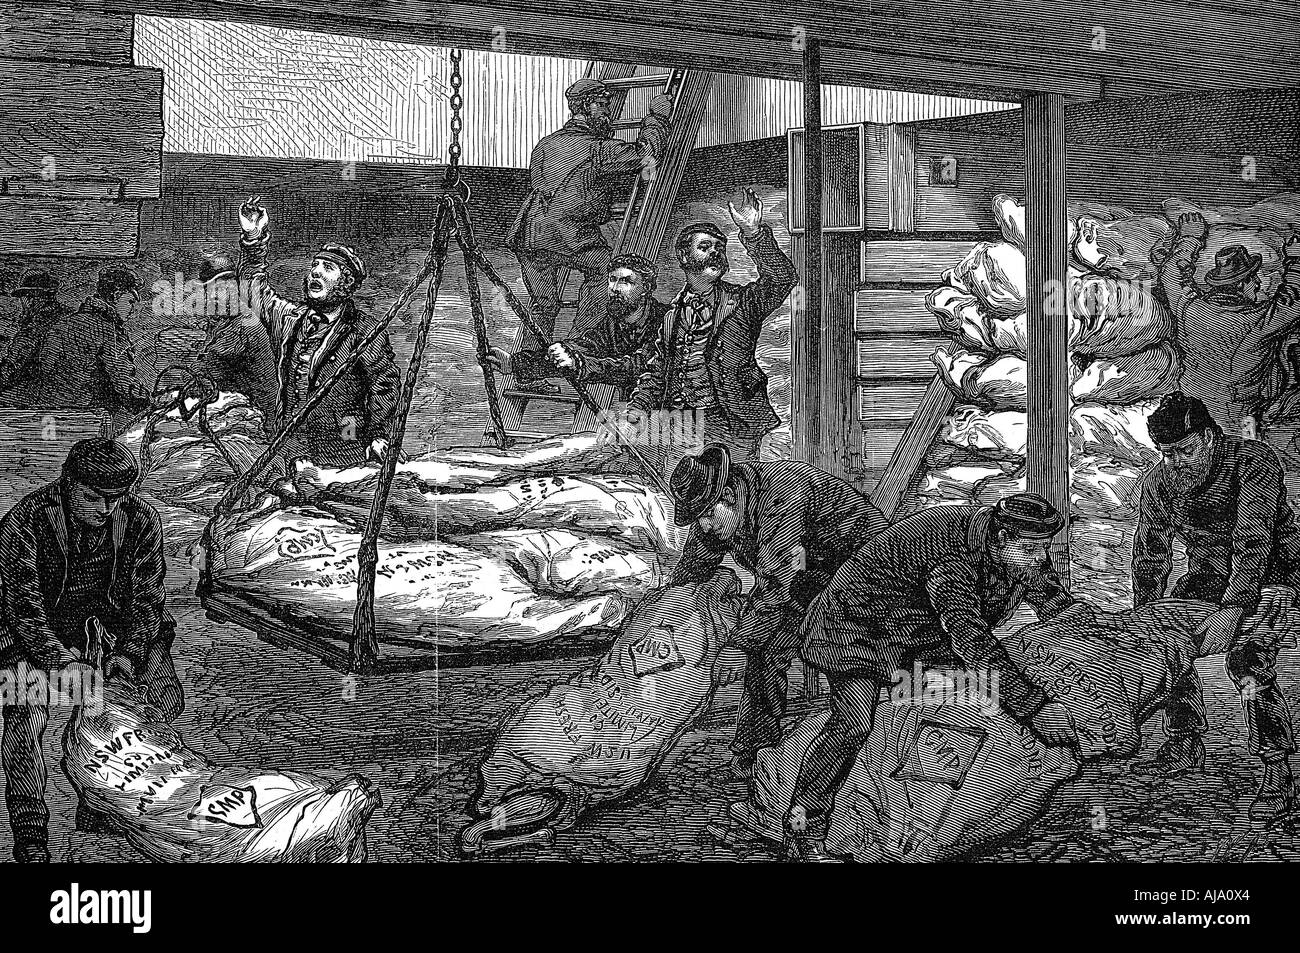 Lo scarico di carni congelate provenienti da Australia, South West India Dock, Millwall, Londra, 1881. Artista: sconosciuto Foto Stock